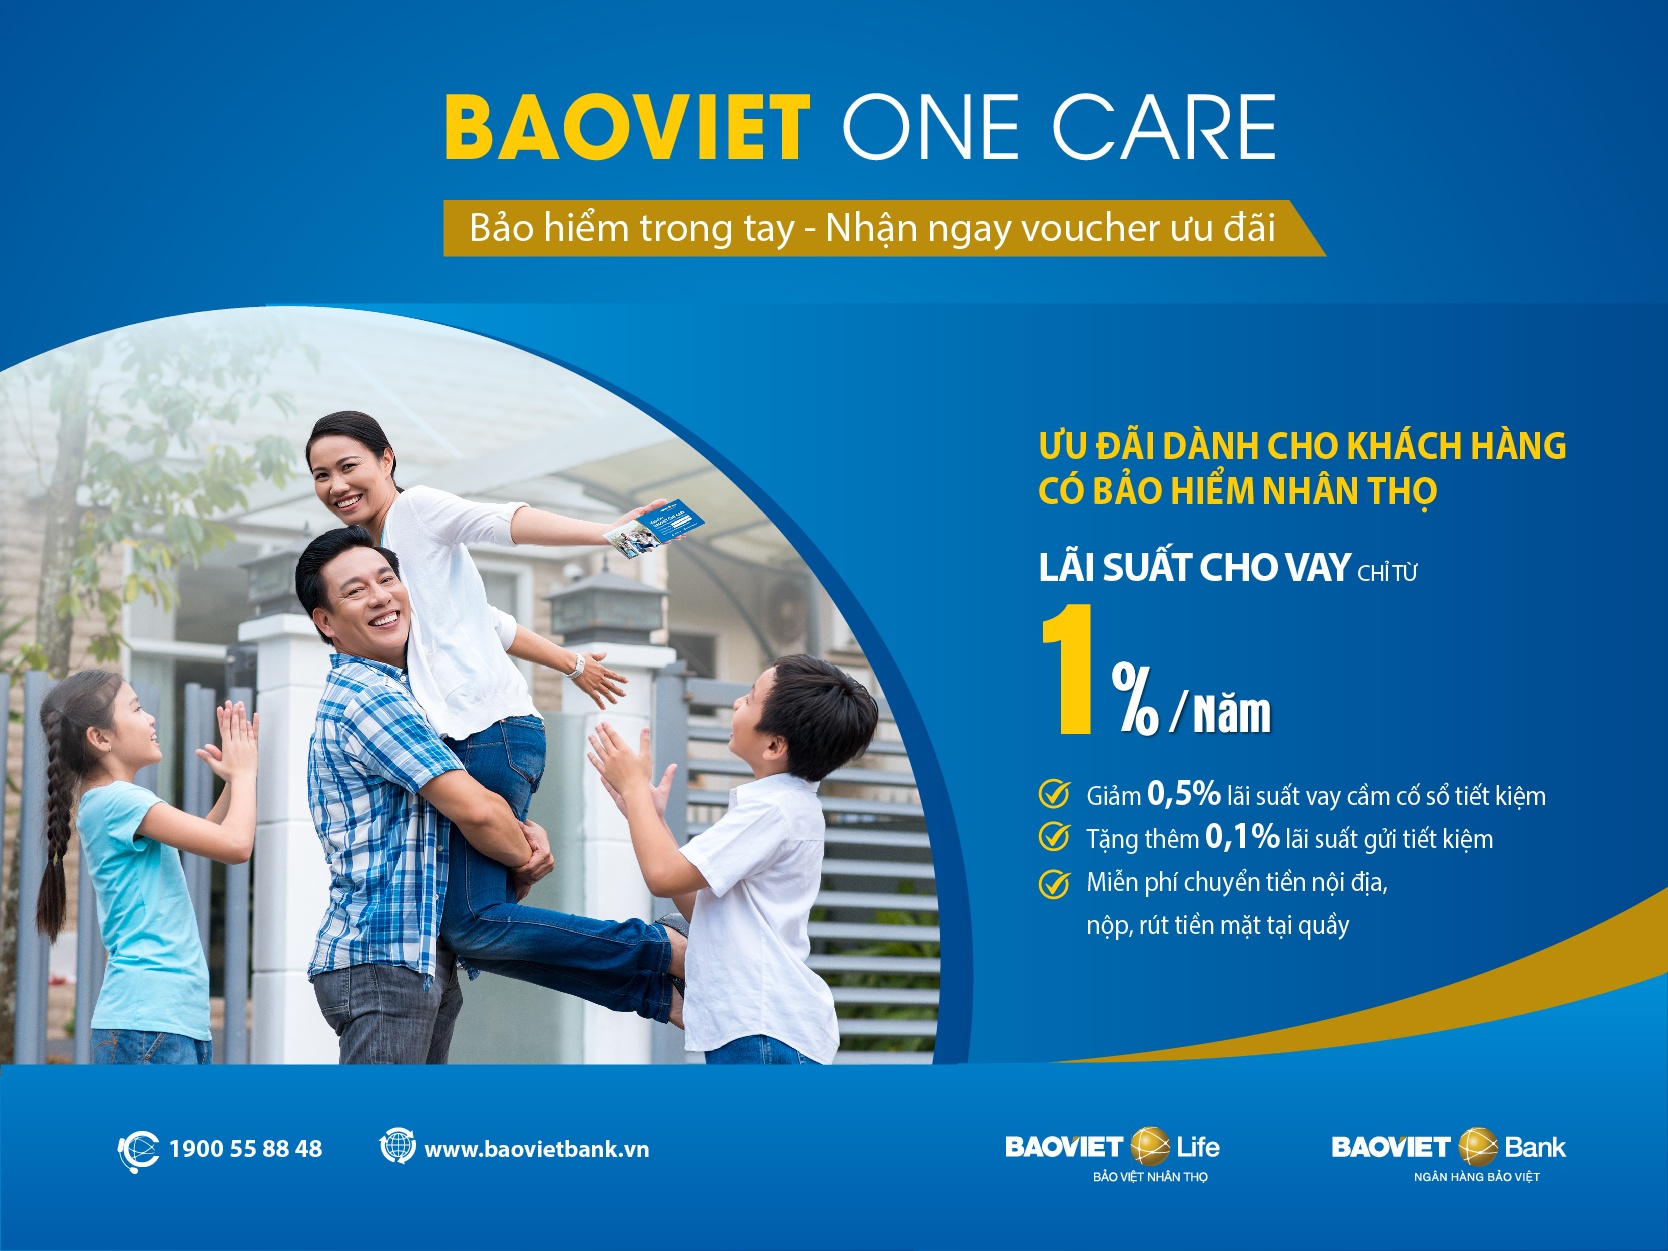 BAOVIET Bank tặng ưu đãi cho khách hàng